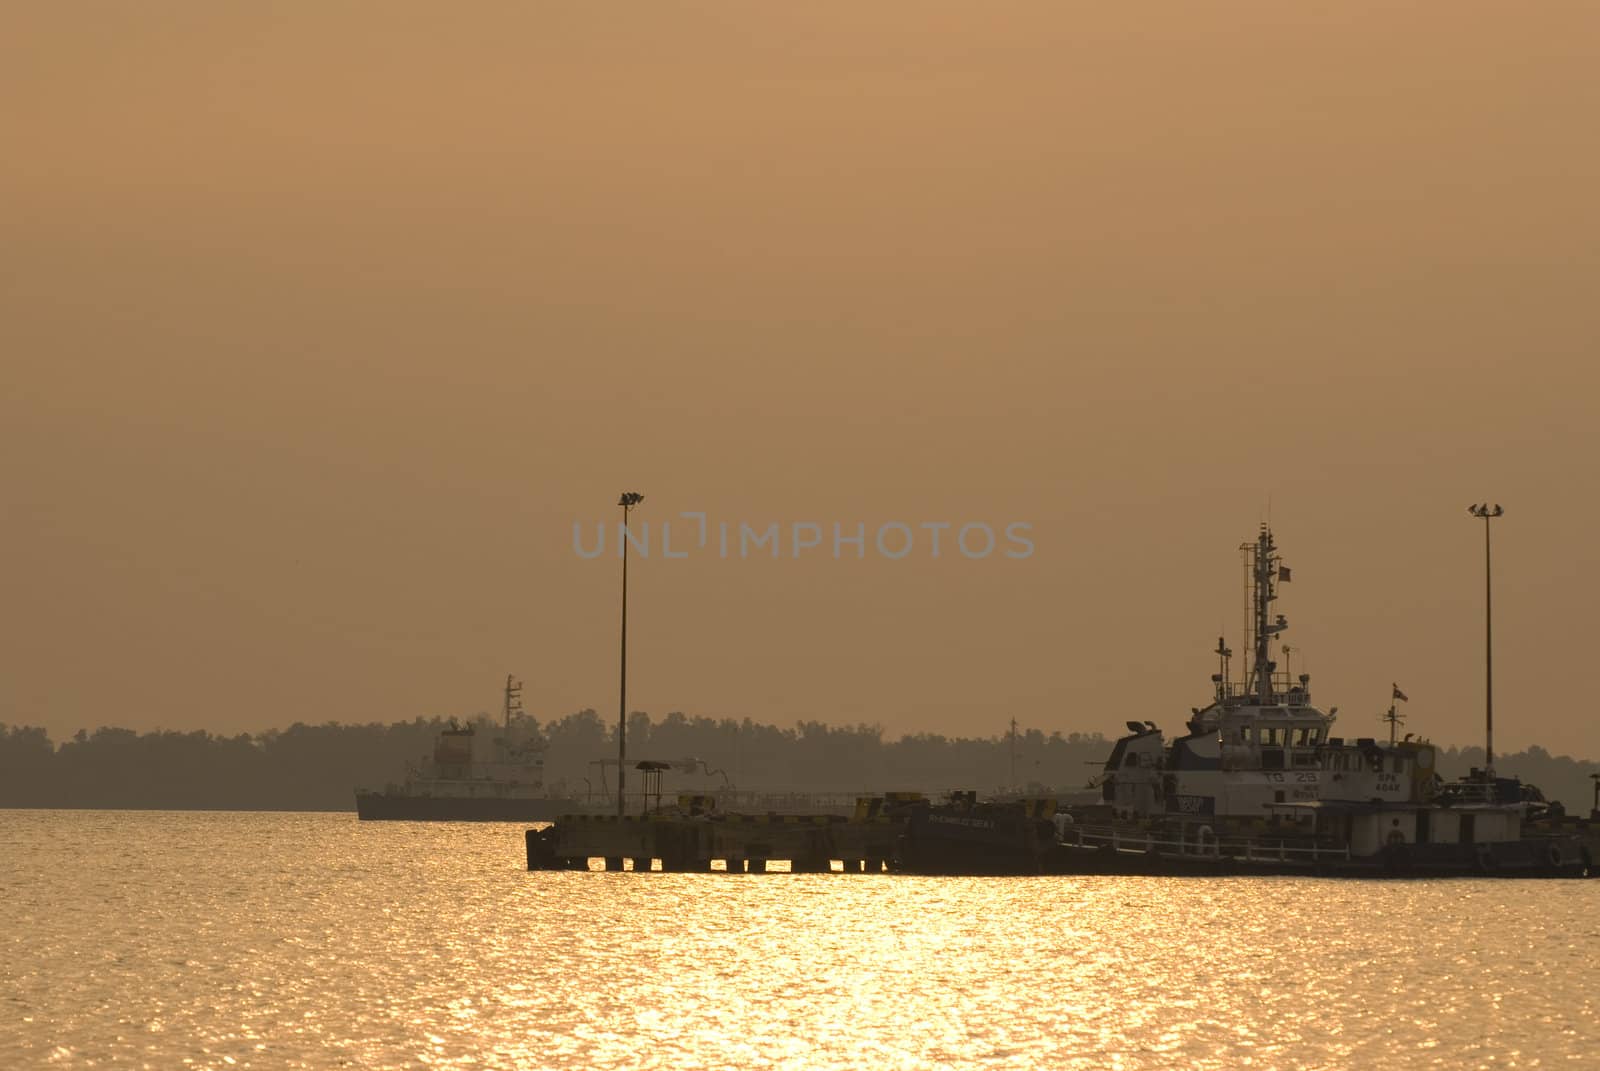 ship yard during sunset